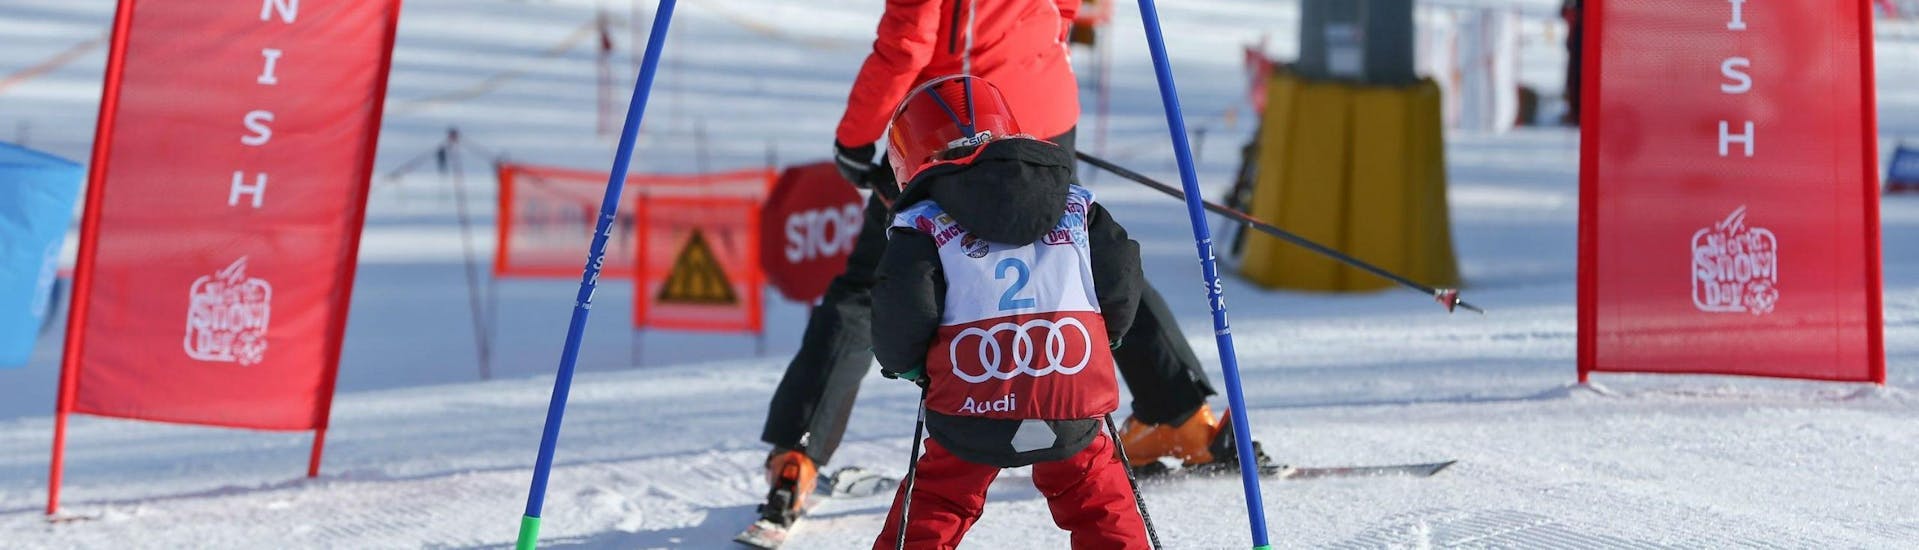 Un bambino sta migliorando la sua tecnica di sci durante una delle lezioni di sci per bambini "Smart" (4-12 anni) - con esperienza organizzate dalla scuola di sci Scuola Sci Cortina.